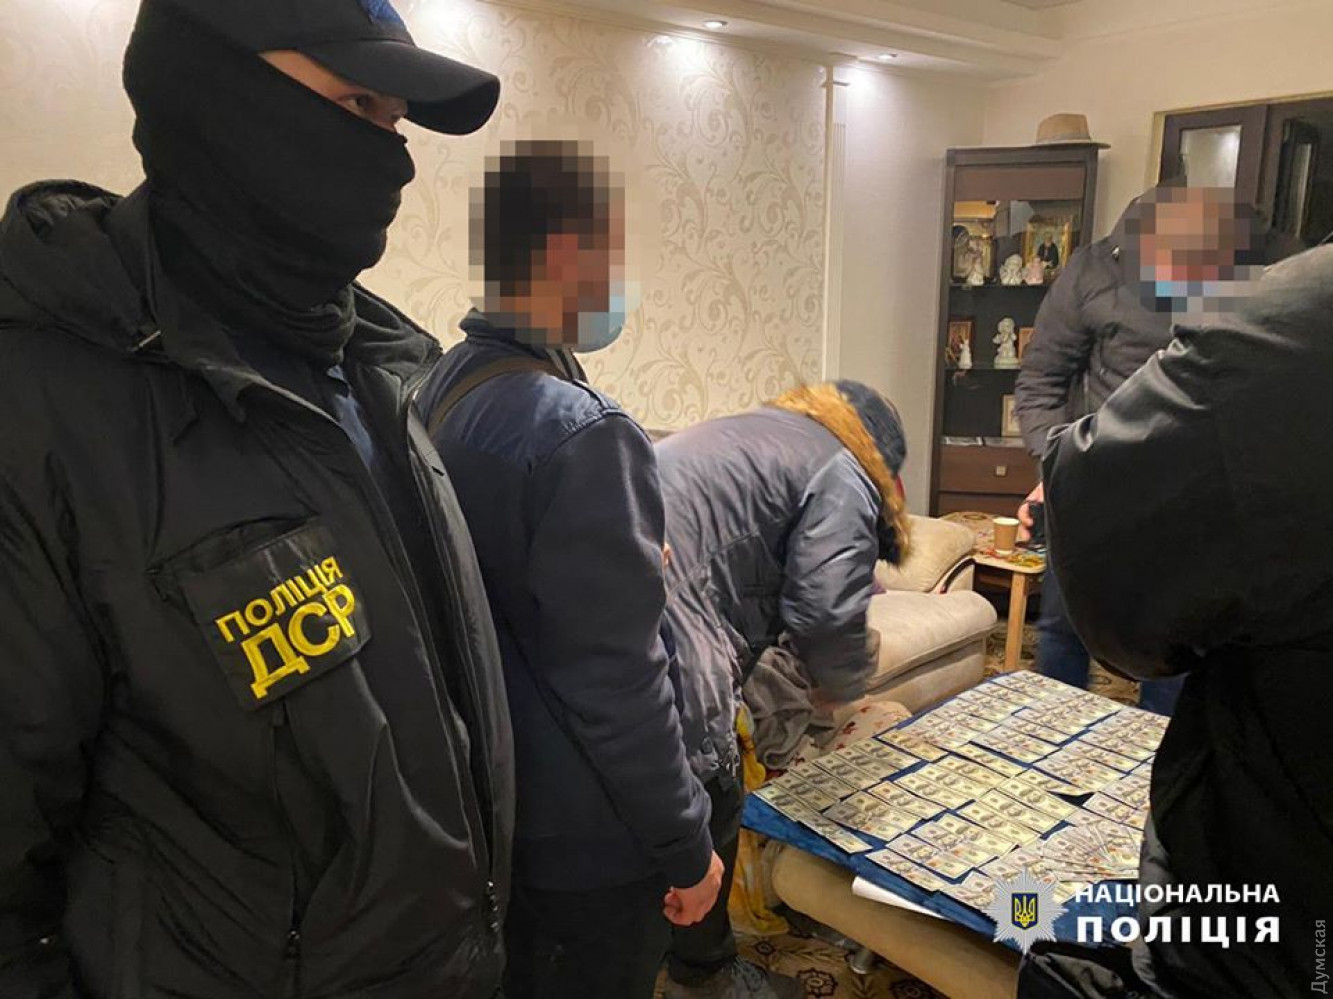 Одесский прокурор погорел на взятке 25 тыс. долларов. Фото: Нацполиция